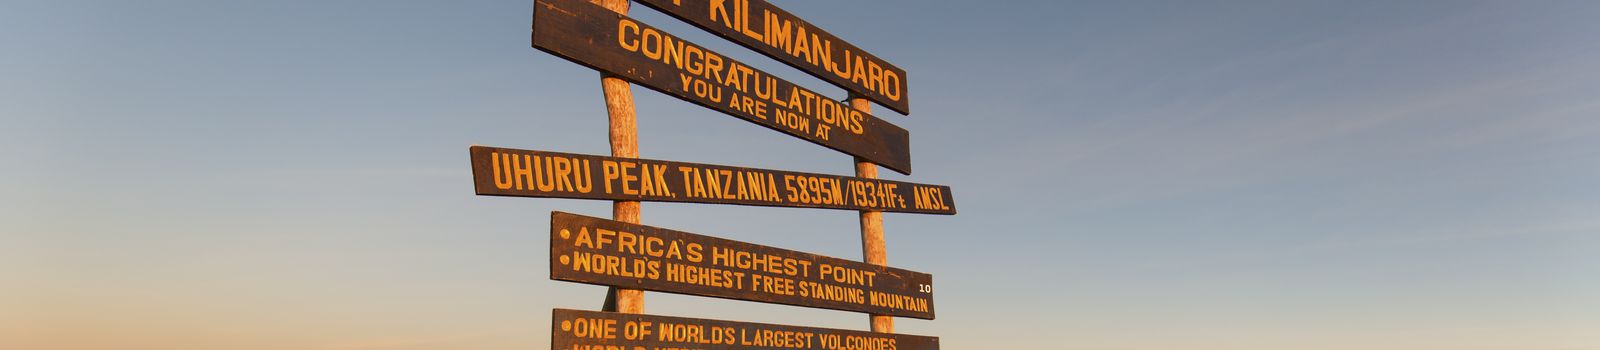 Mount Kilimanjaro shutterstock_285996227.jpg